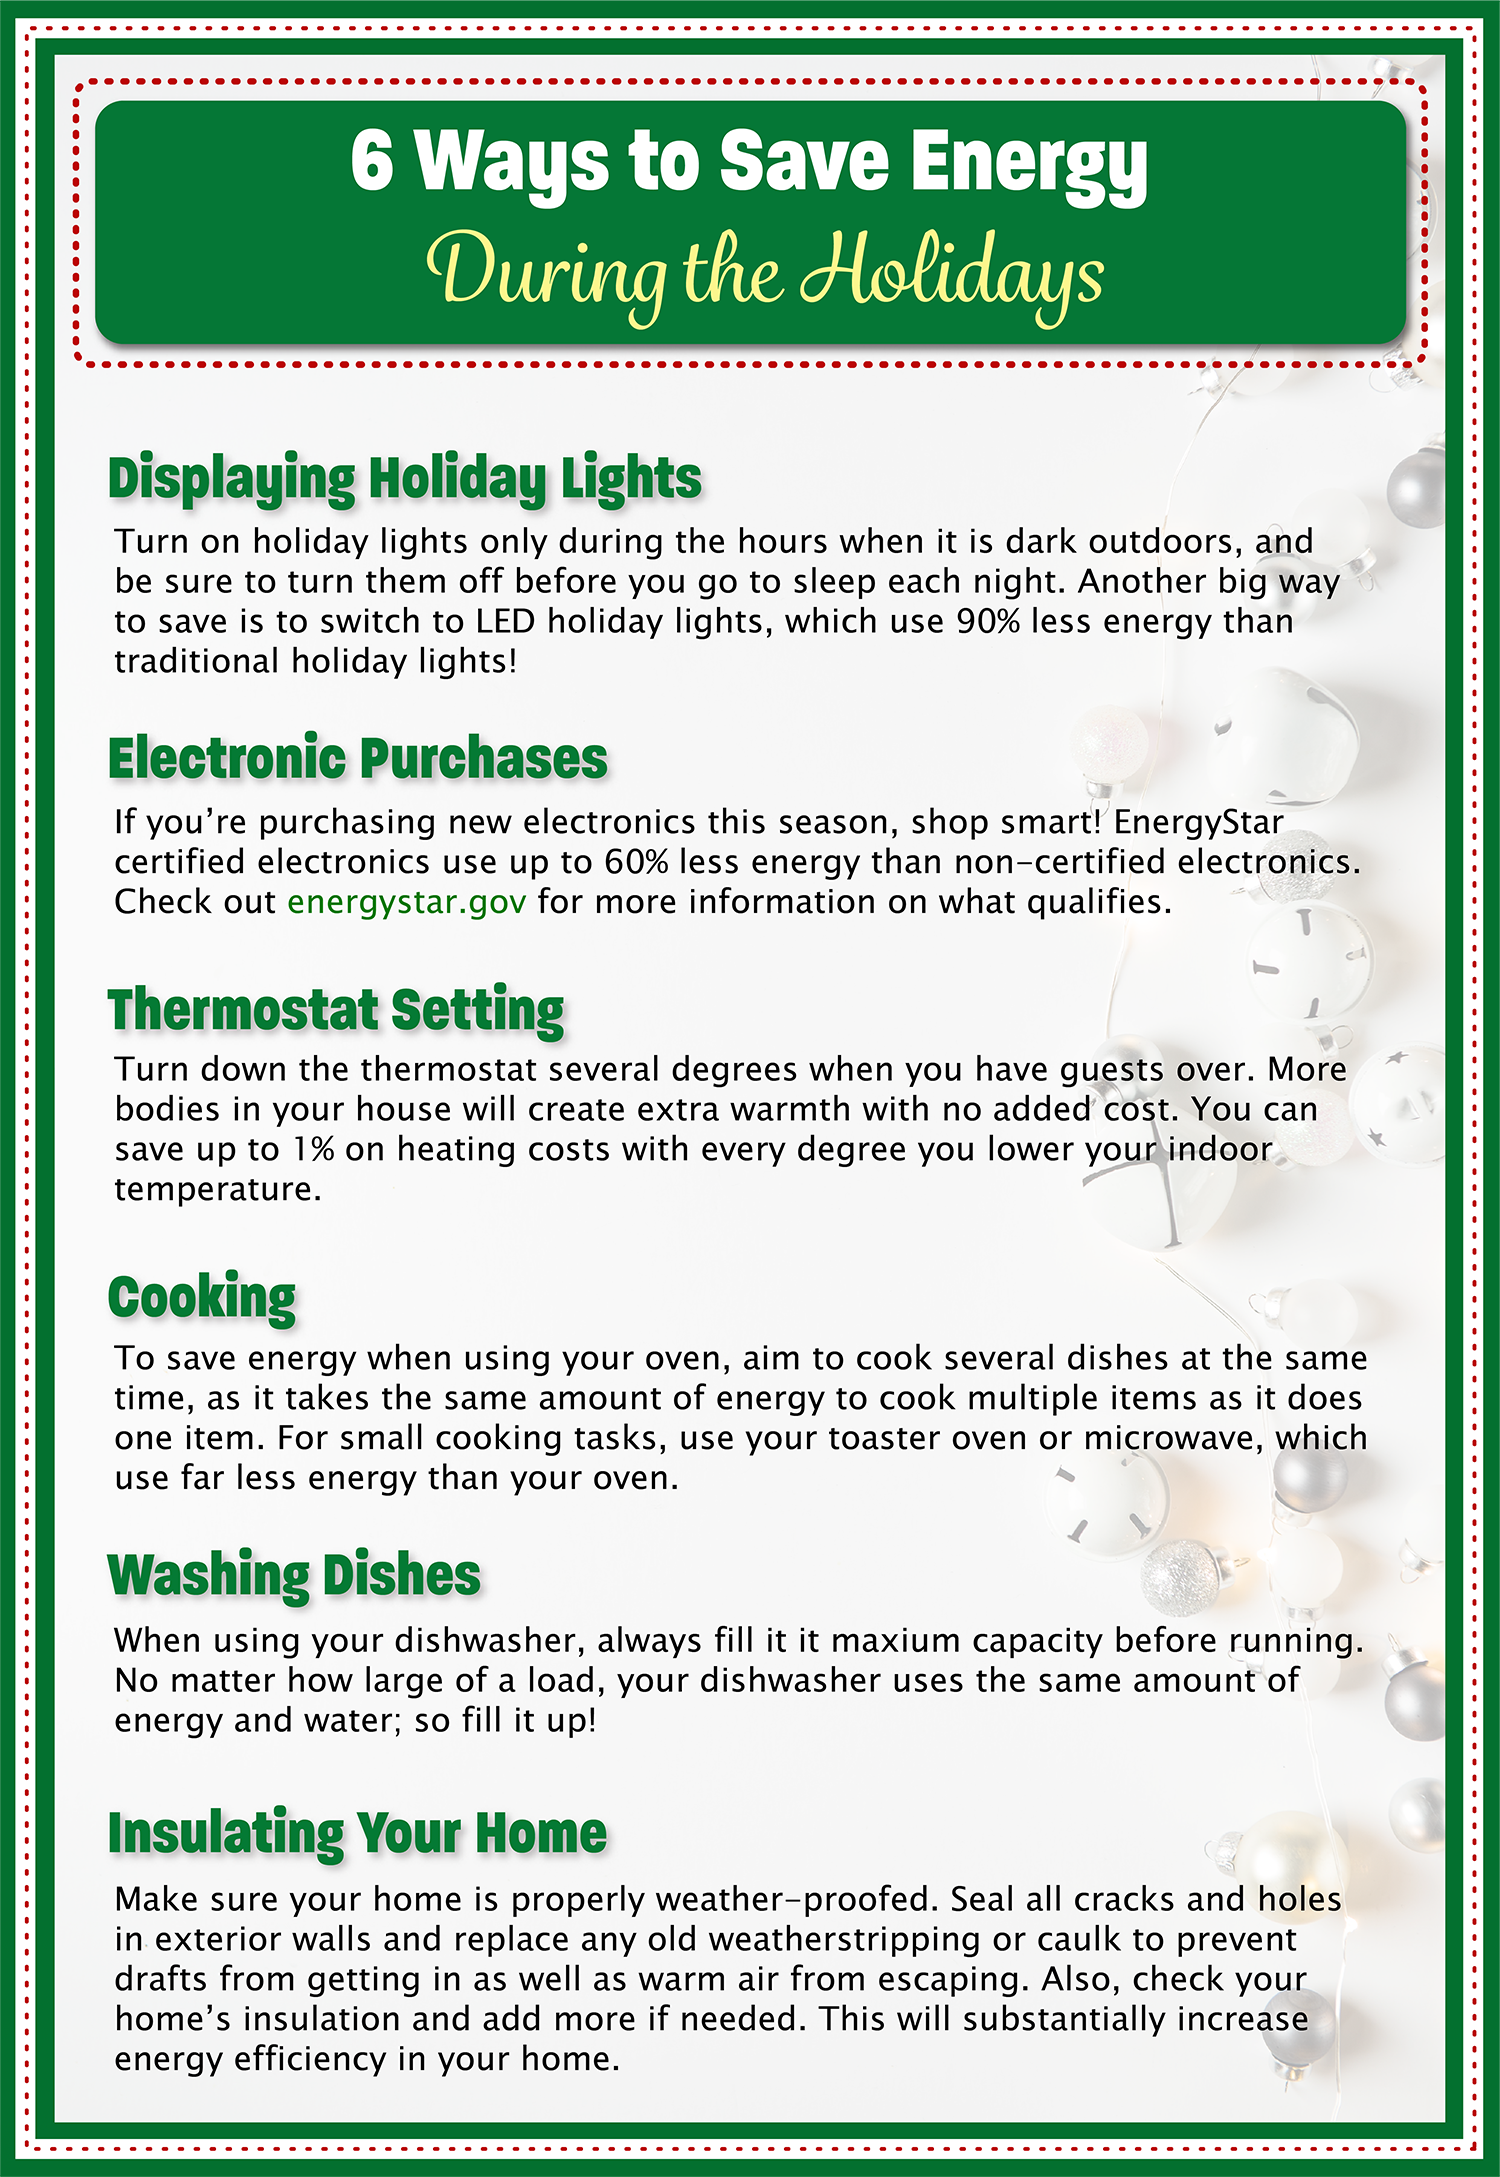 Holiday Energy Savings